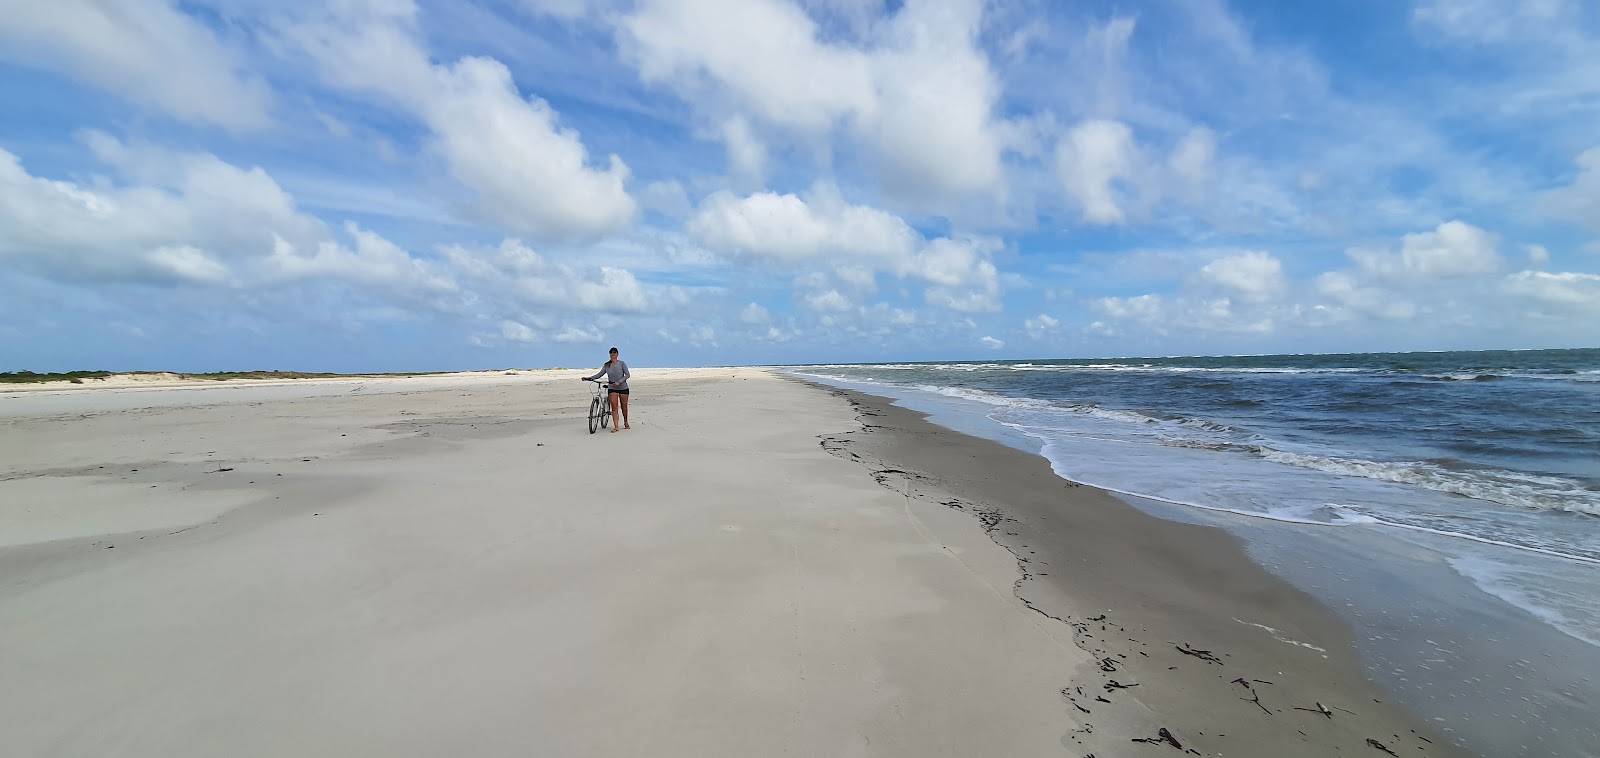 Superagui Plajı'in fotoğrafı parlak ince kum yüzey ile